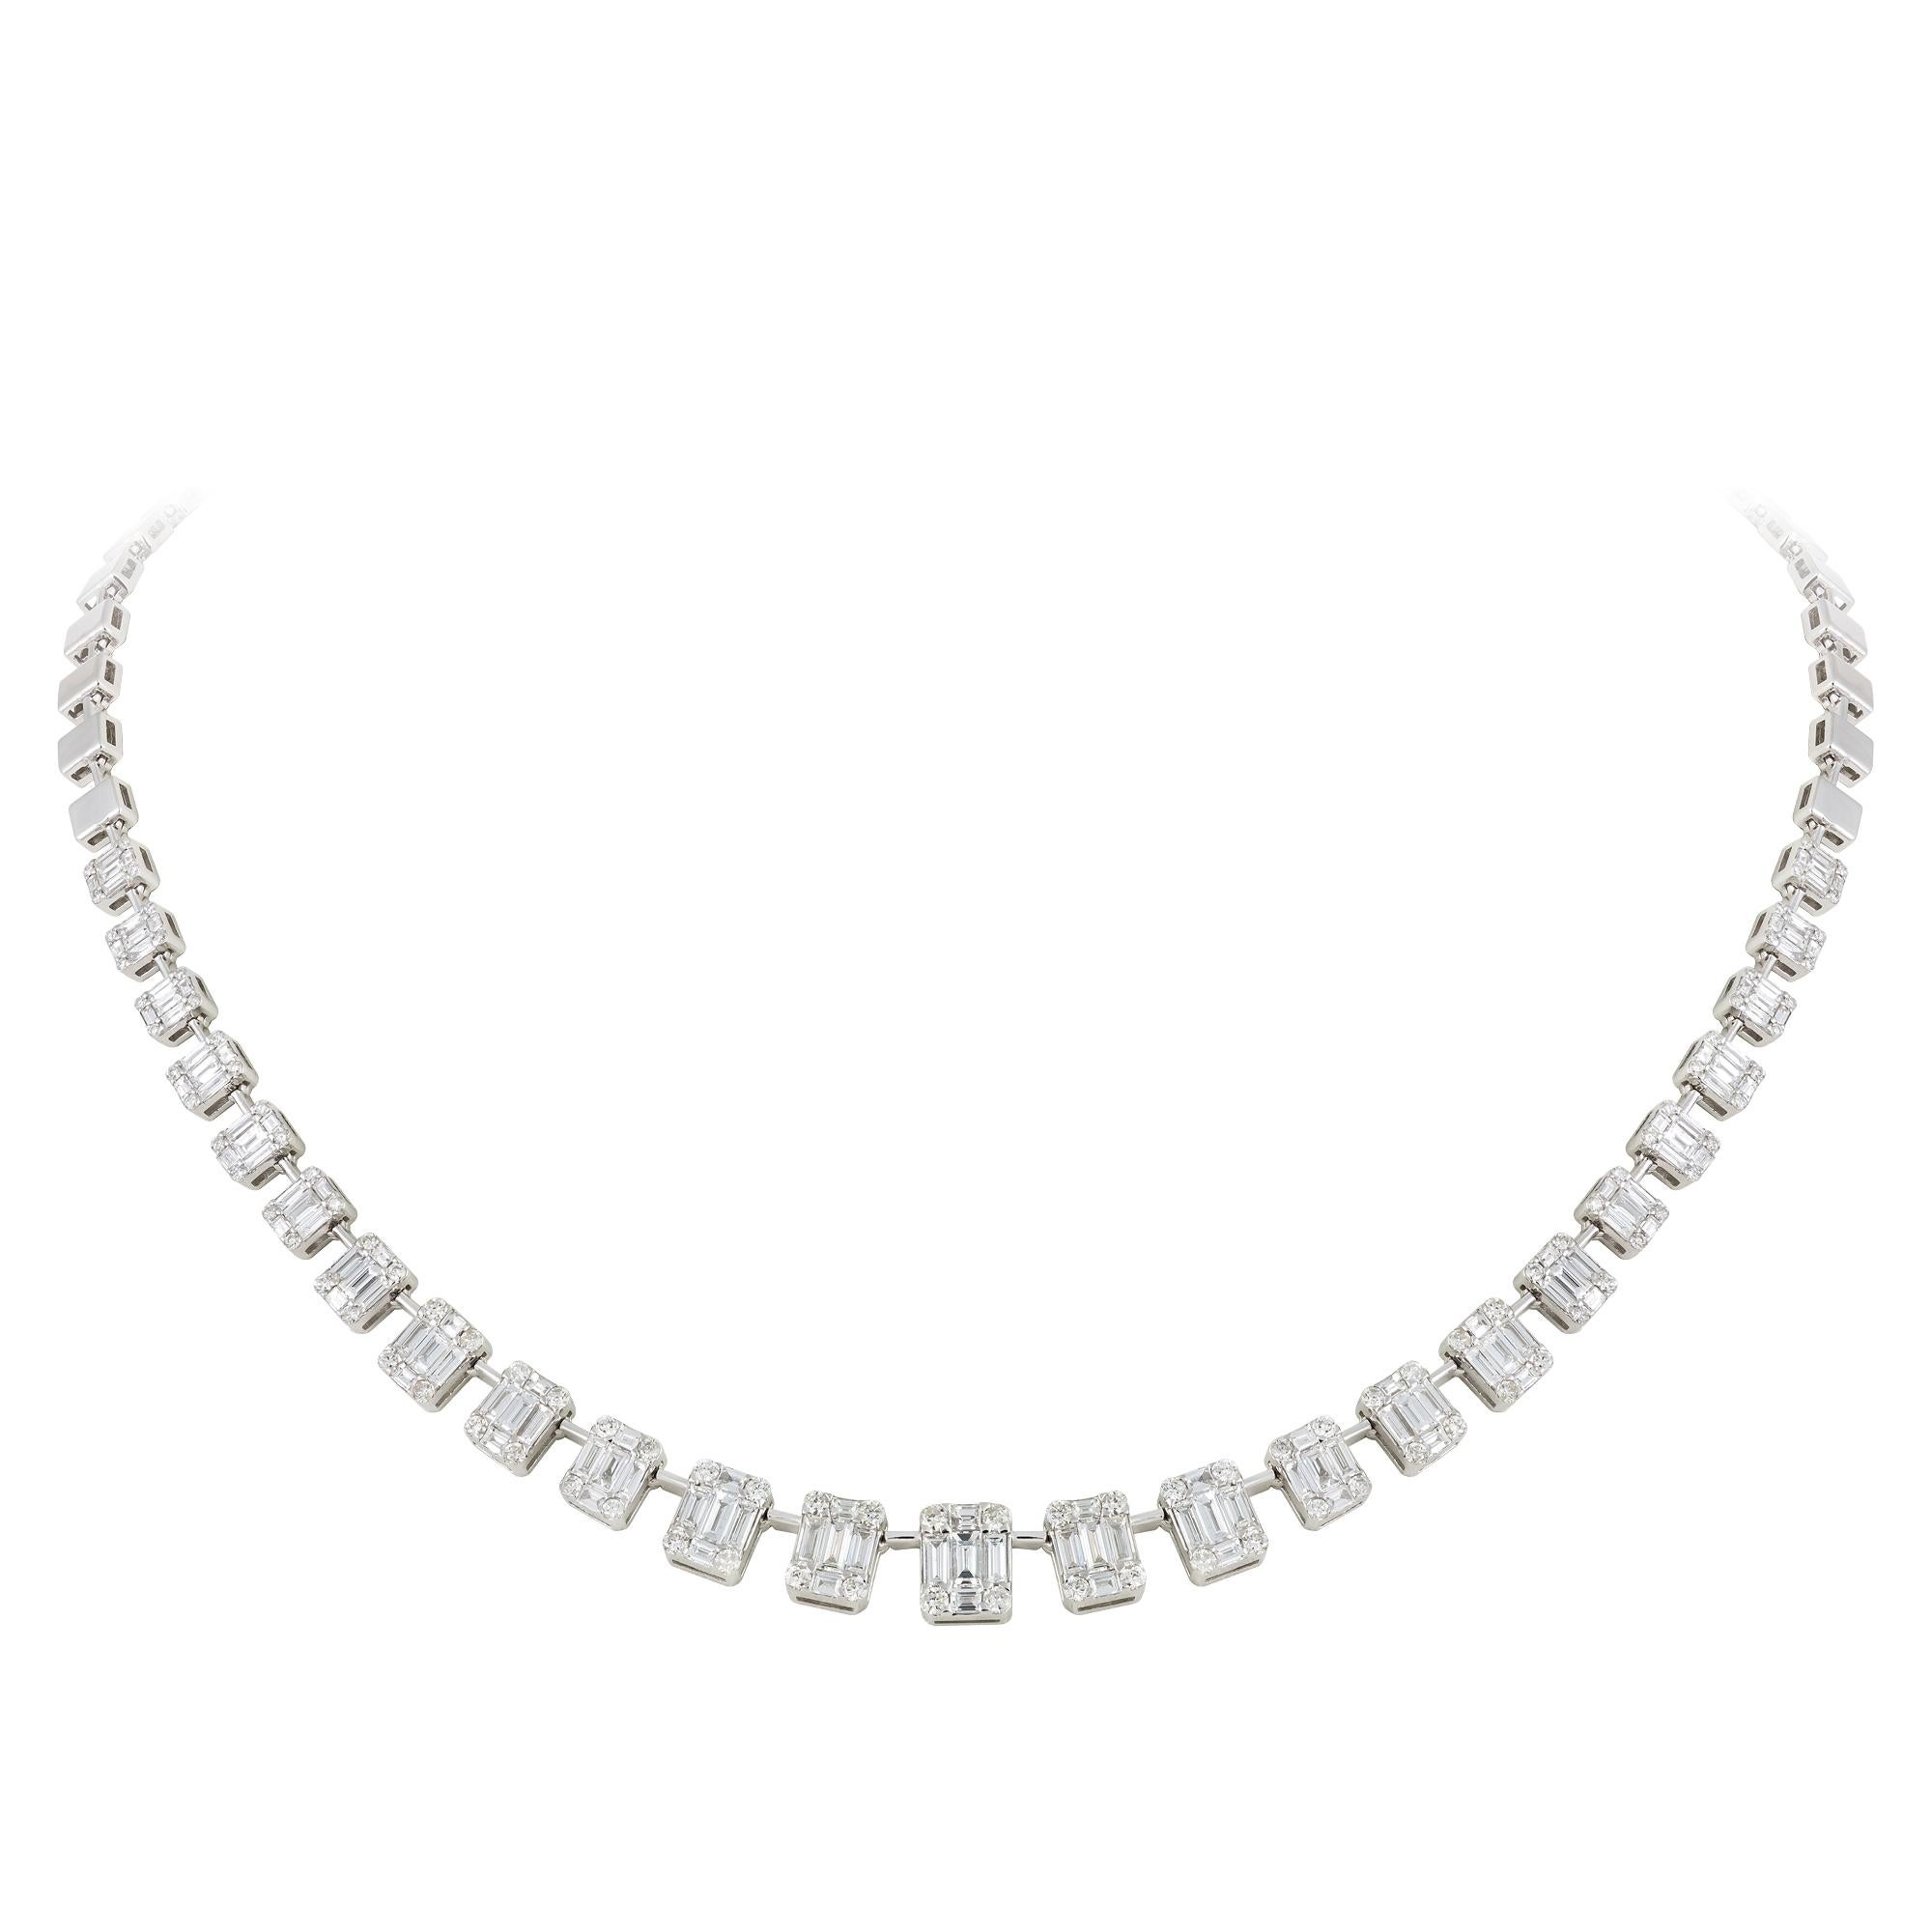 COLLIER Or blanc 18K Diamant 1.37 Cts/100 Pcs Baguette effilée 4.59 Cts/125 Pcs
